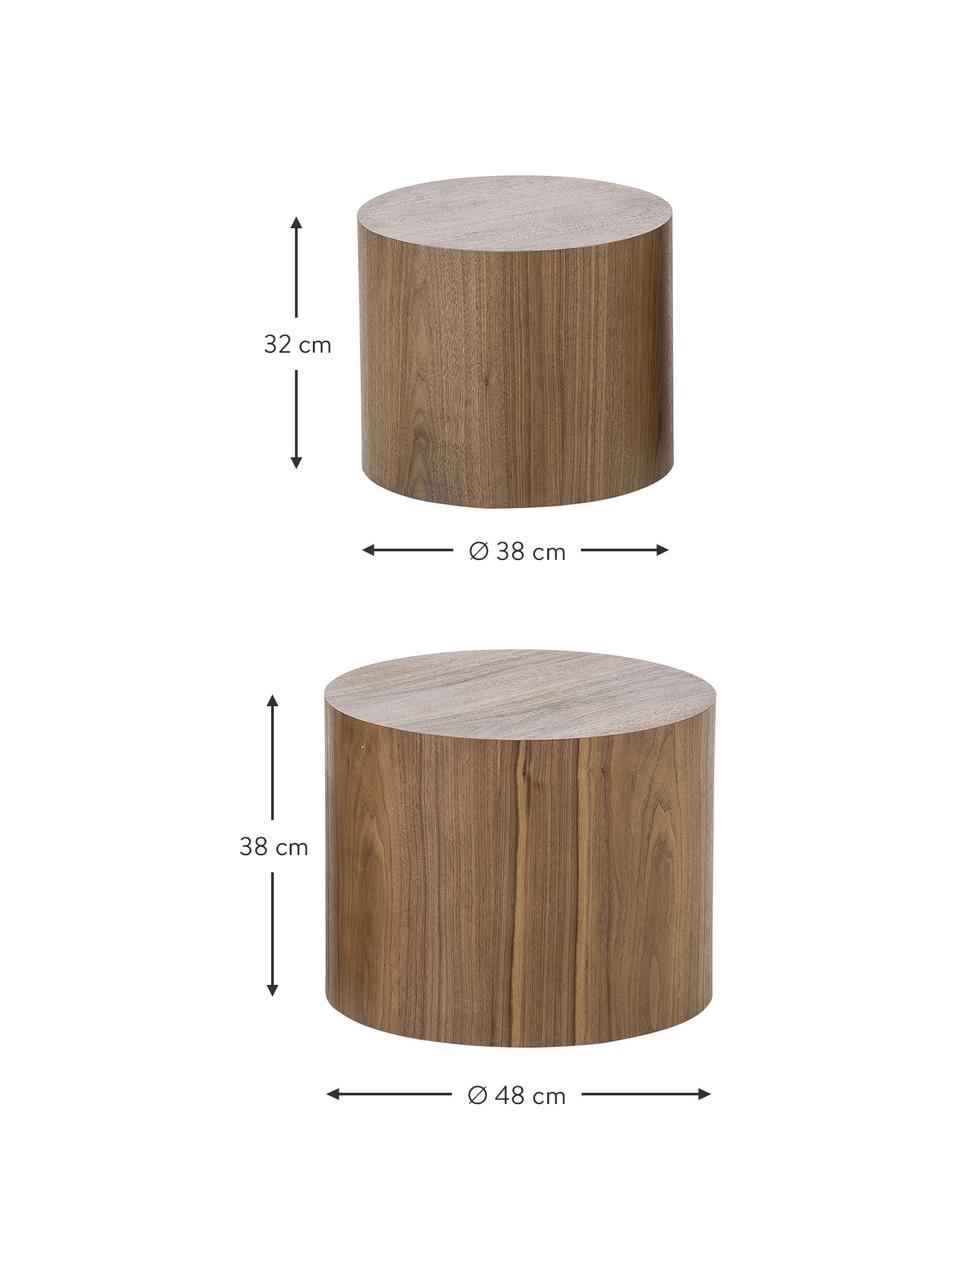 Couchtisch-Set Dan aus Holz, 2-tlg., Mitteldichte Holzfaserplatte (MDF) mit Walnussholzfurnier, Dunkles Holz, Set mit verschiedenen Grössen